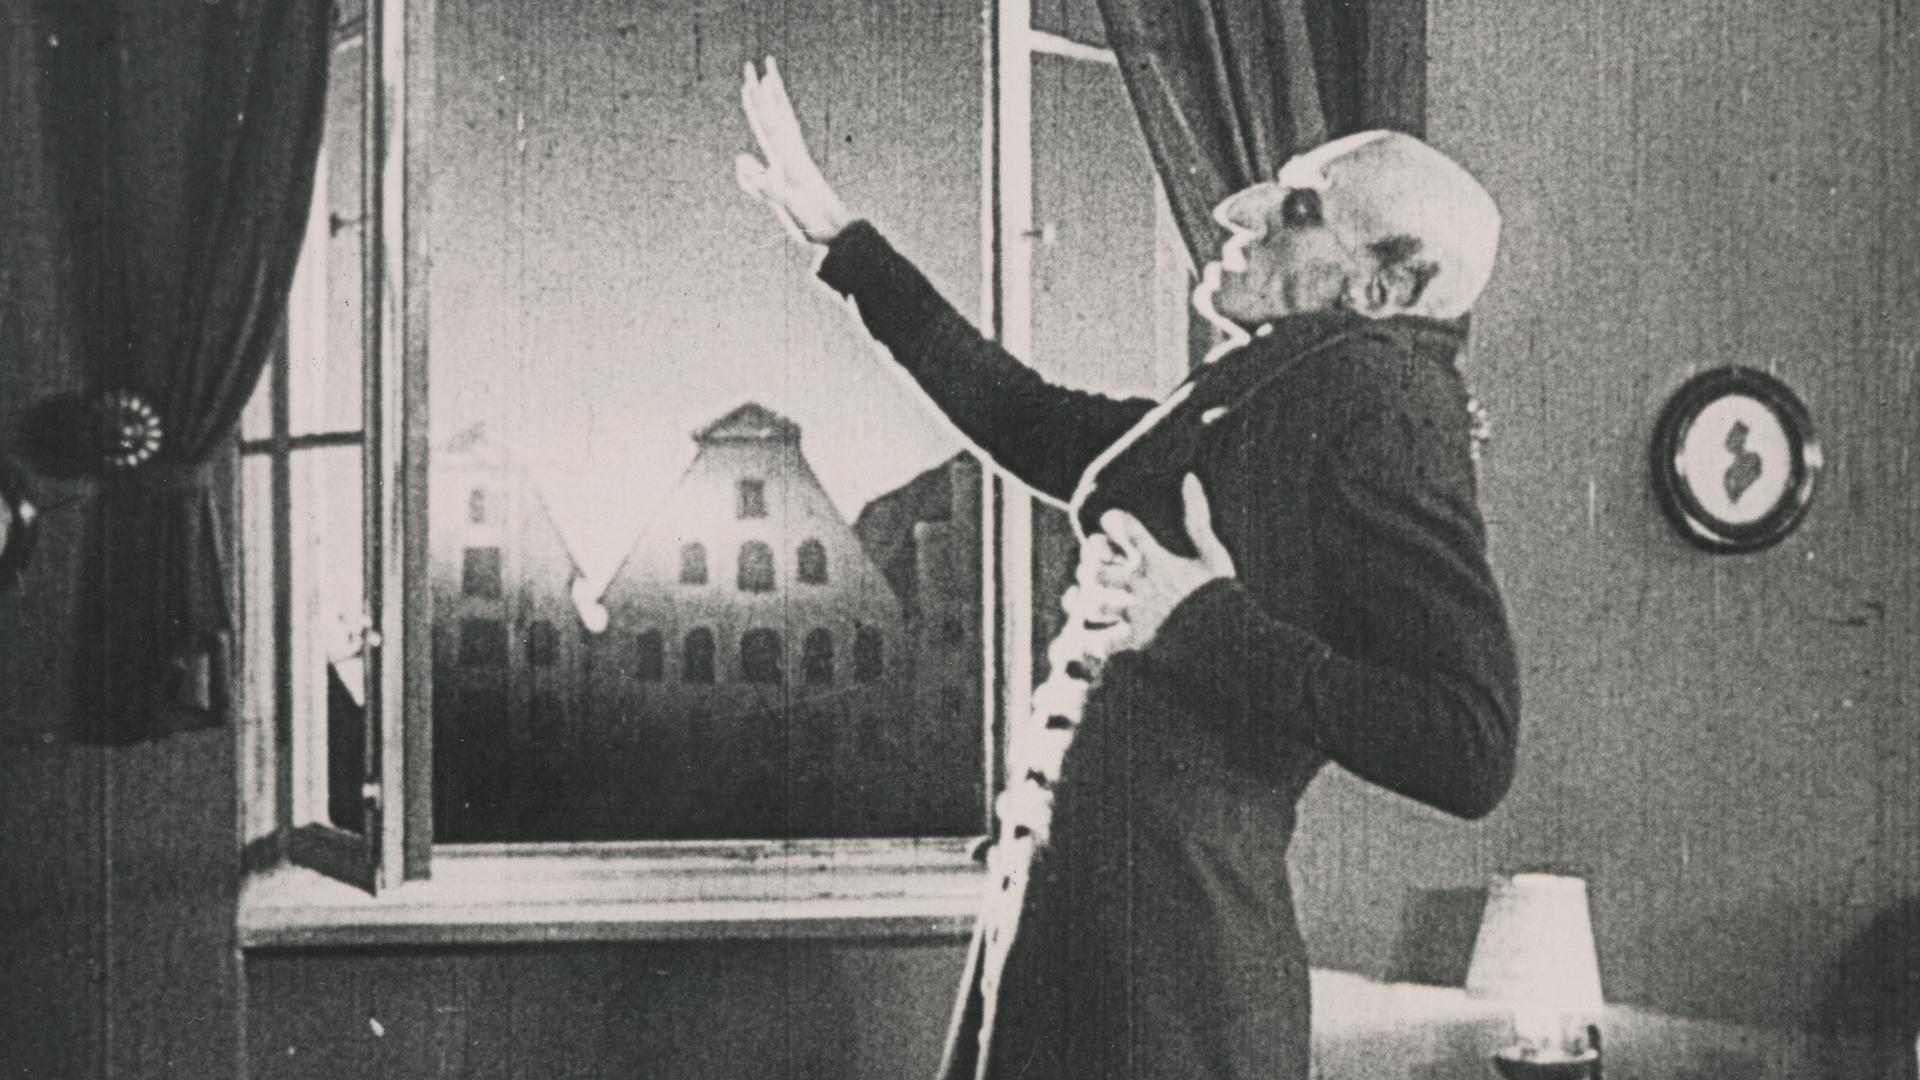 Szene aus Friedrich Wilhelm Murnaus "Nosferatu - Symphonie des Grauens".